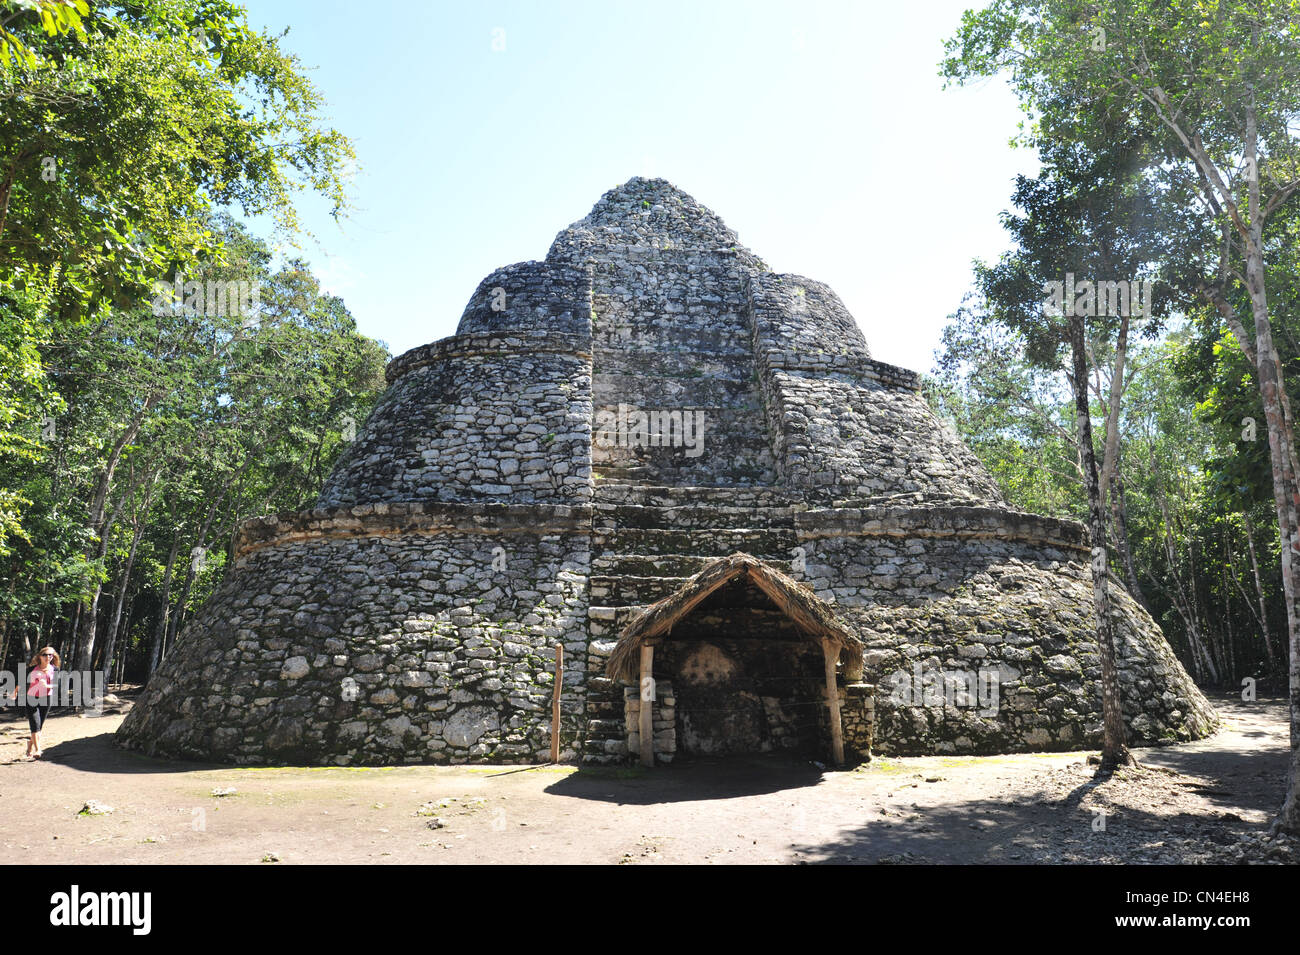 Maya ruins at Coba in Mexico Stock Photo